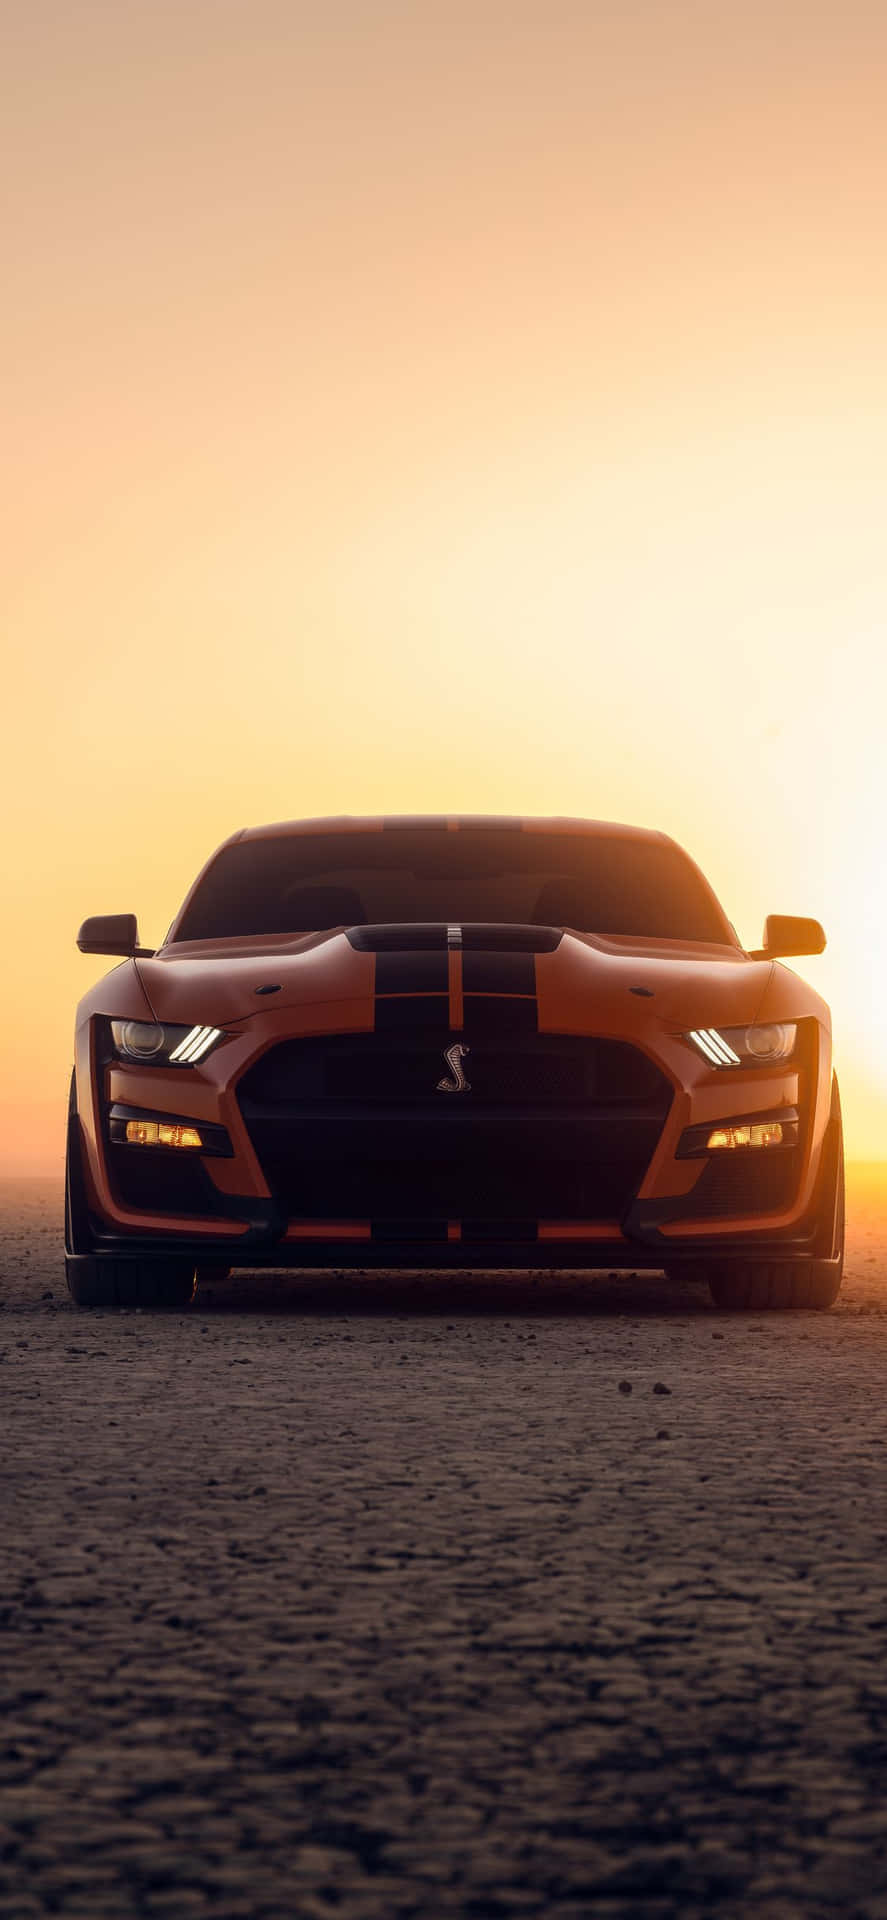 Unford Mustang Gt Está Estacionado En El Desierto Al Atardecer. Fondo de pantalla